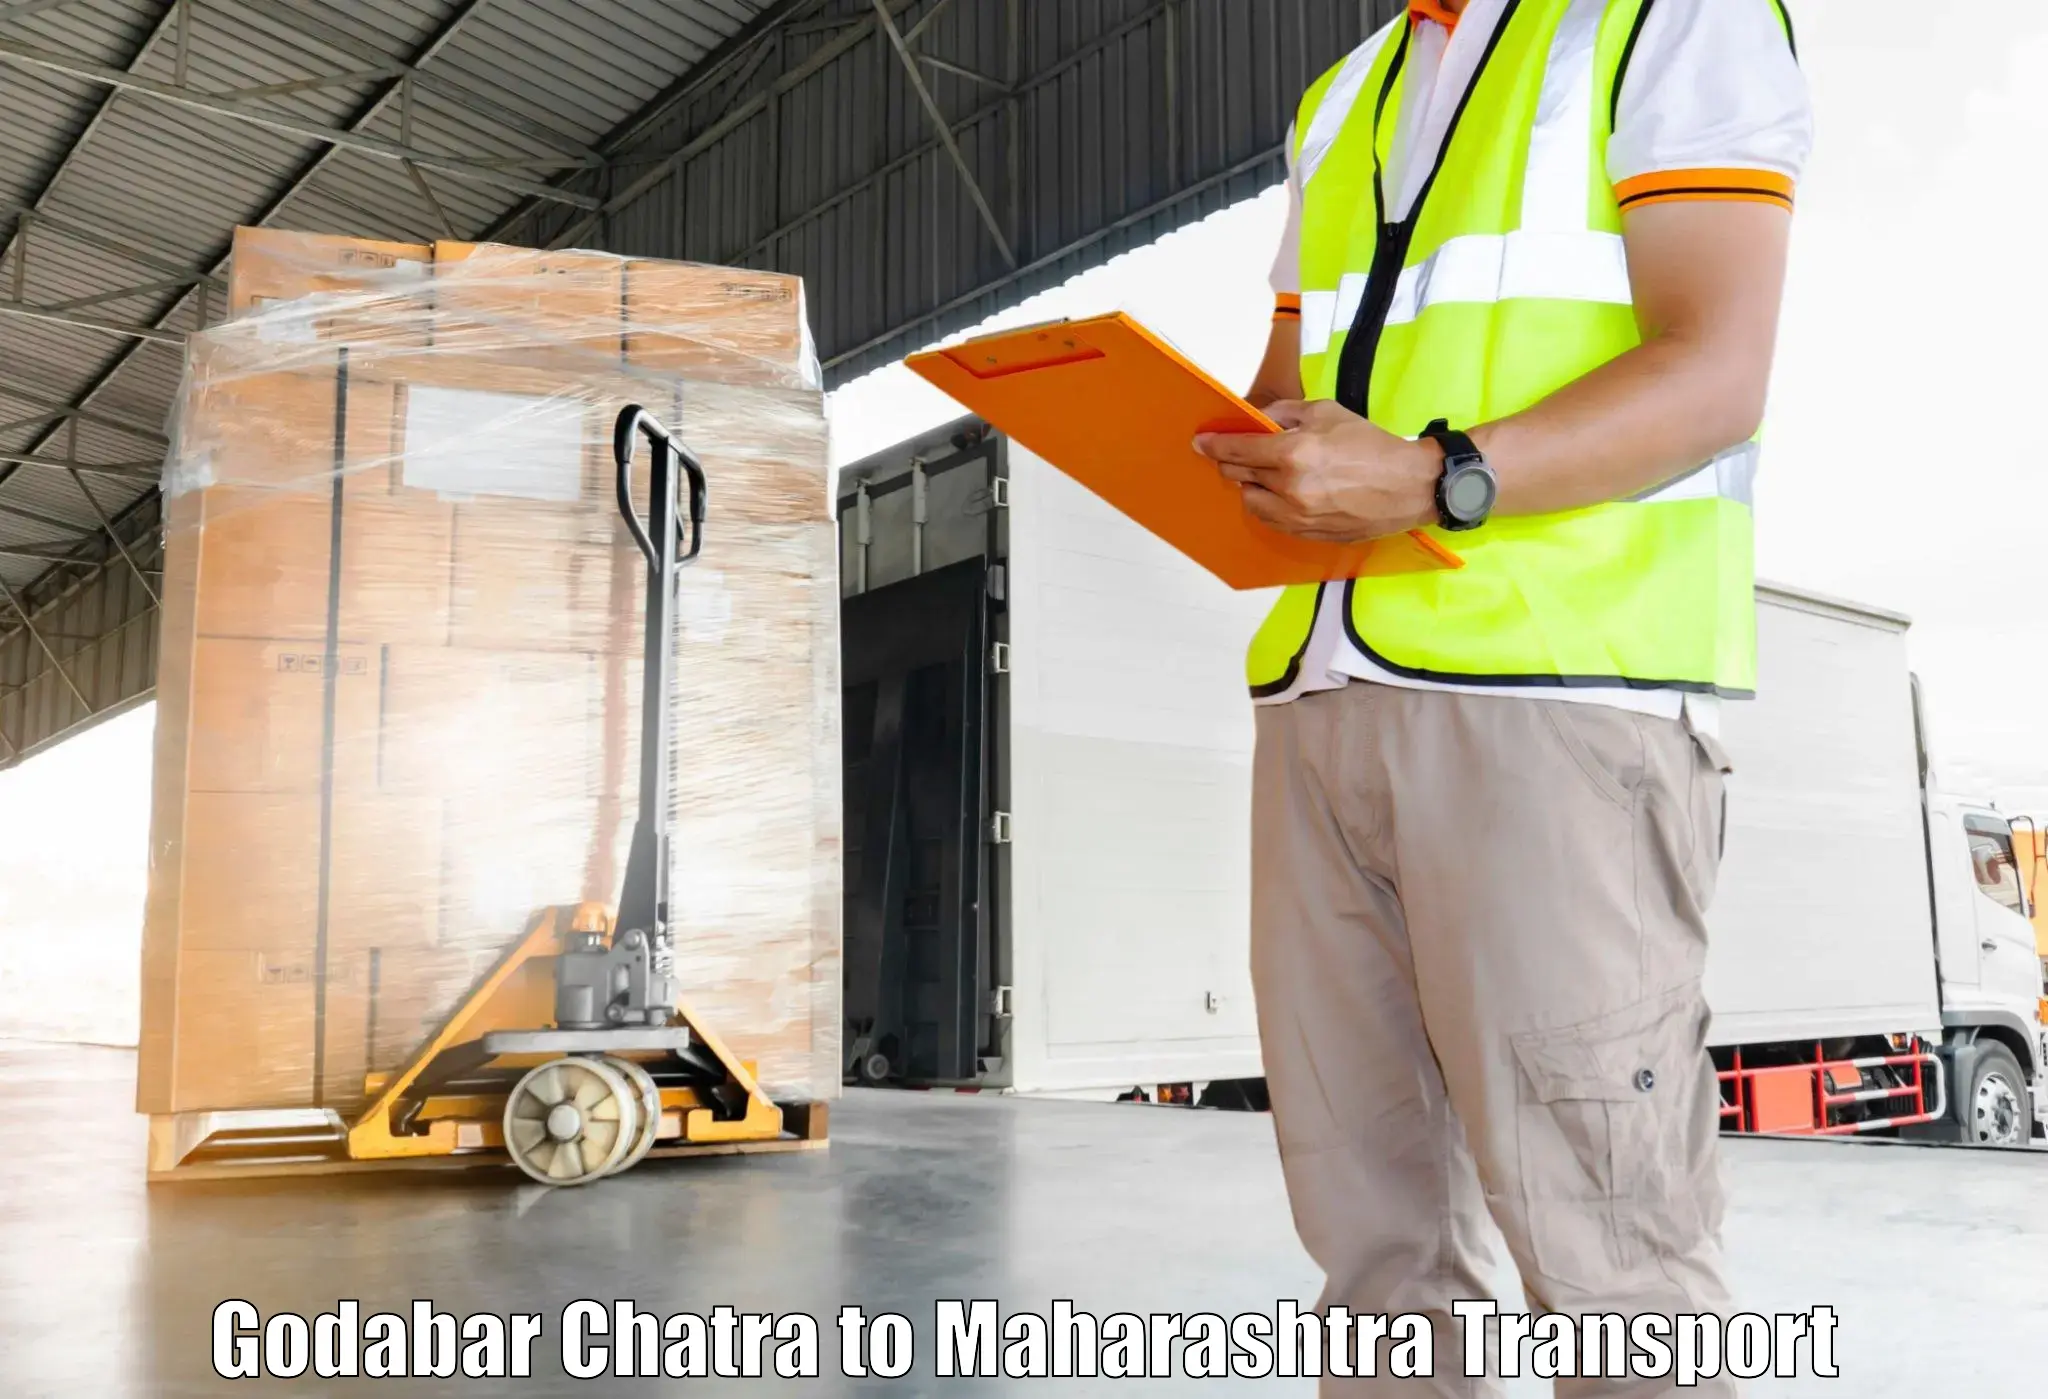 Land transport services Godabar Chatra to Maharashtra